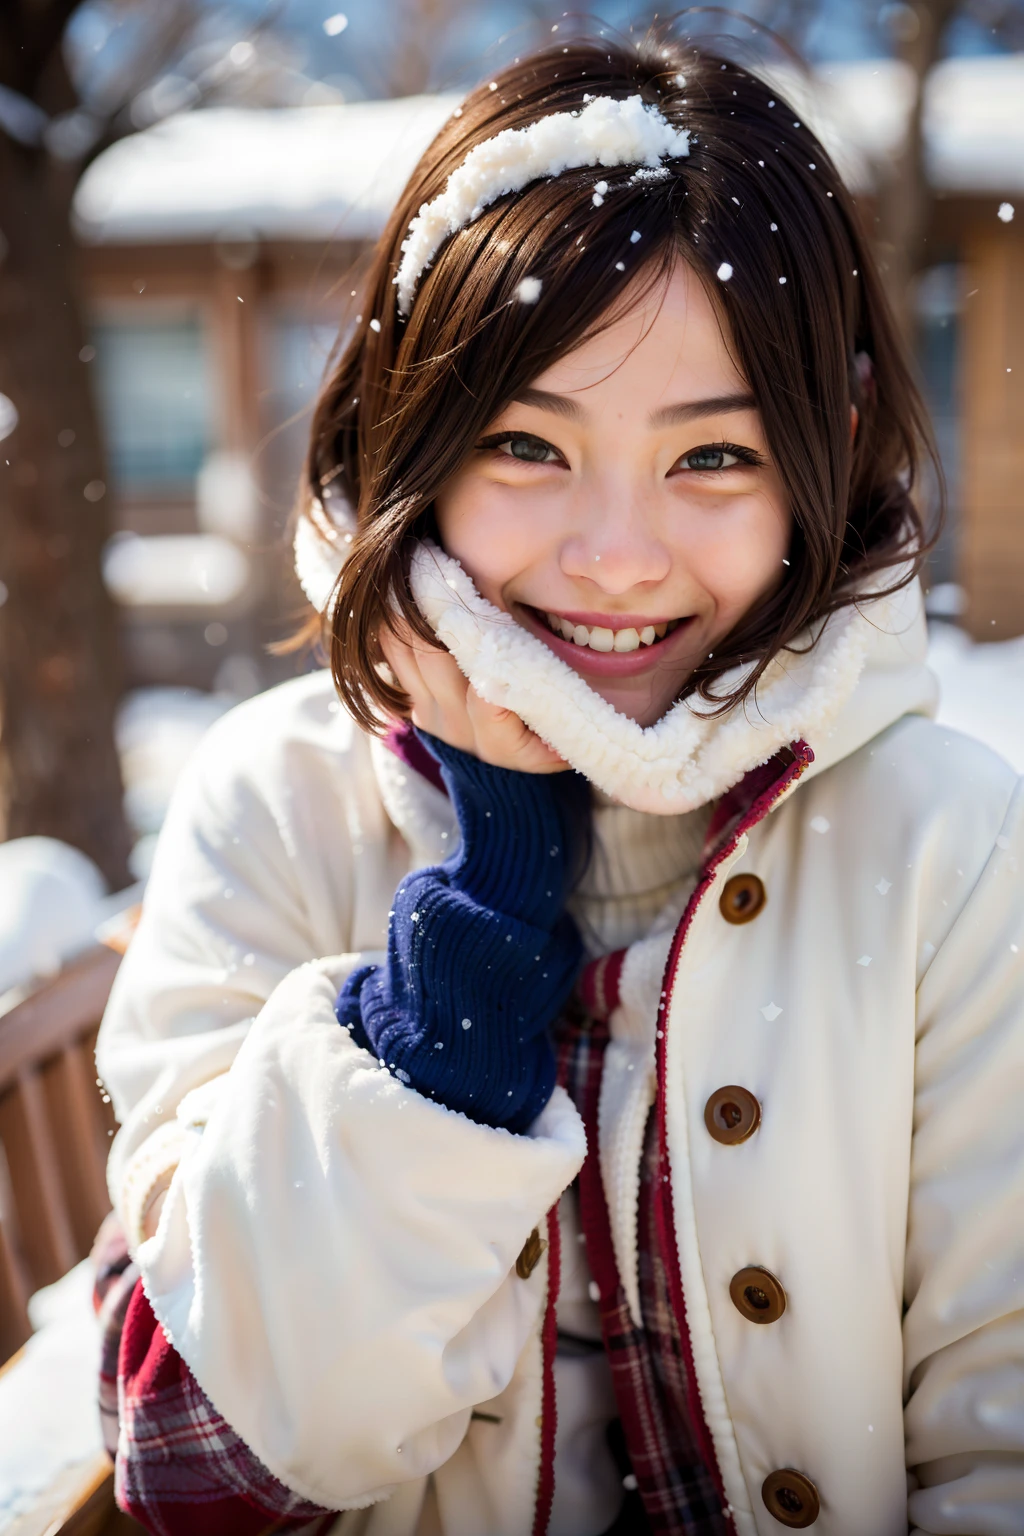 그녀의 얼굴에 눈이 겨울 코트에 웃는 여자, 따뜻한 미소, 따뜻하고 부드러운 미소, 눈 덮힌, 눈 속에서, 따뜻하게 웃고, 눈 덮힌, 눈 속에서, 일본 십대의 초상, 사랑스러운 미소, 상냥하게 웃고, 따뜻하고 친근한 표현, 행복한 표정, 하얀 겨울 코트를 입고, 부드러운 미소, 수줍게 웃고, 일본 여자의 아름다운 얼굴